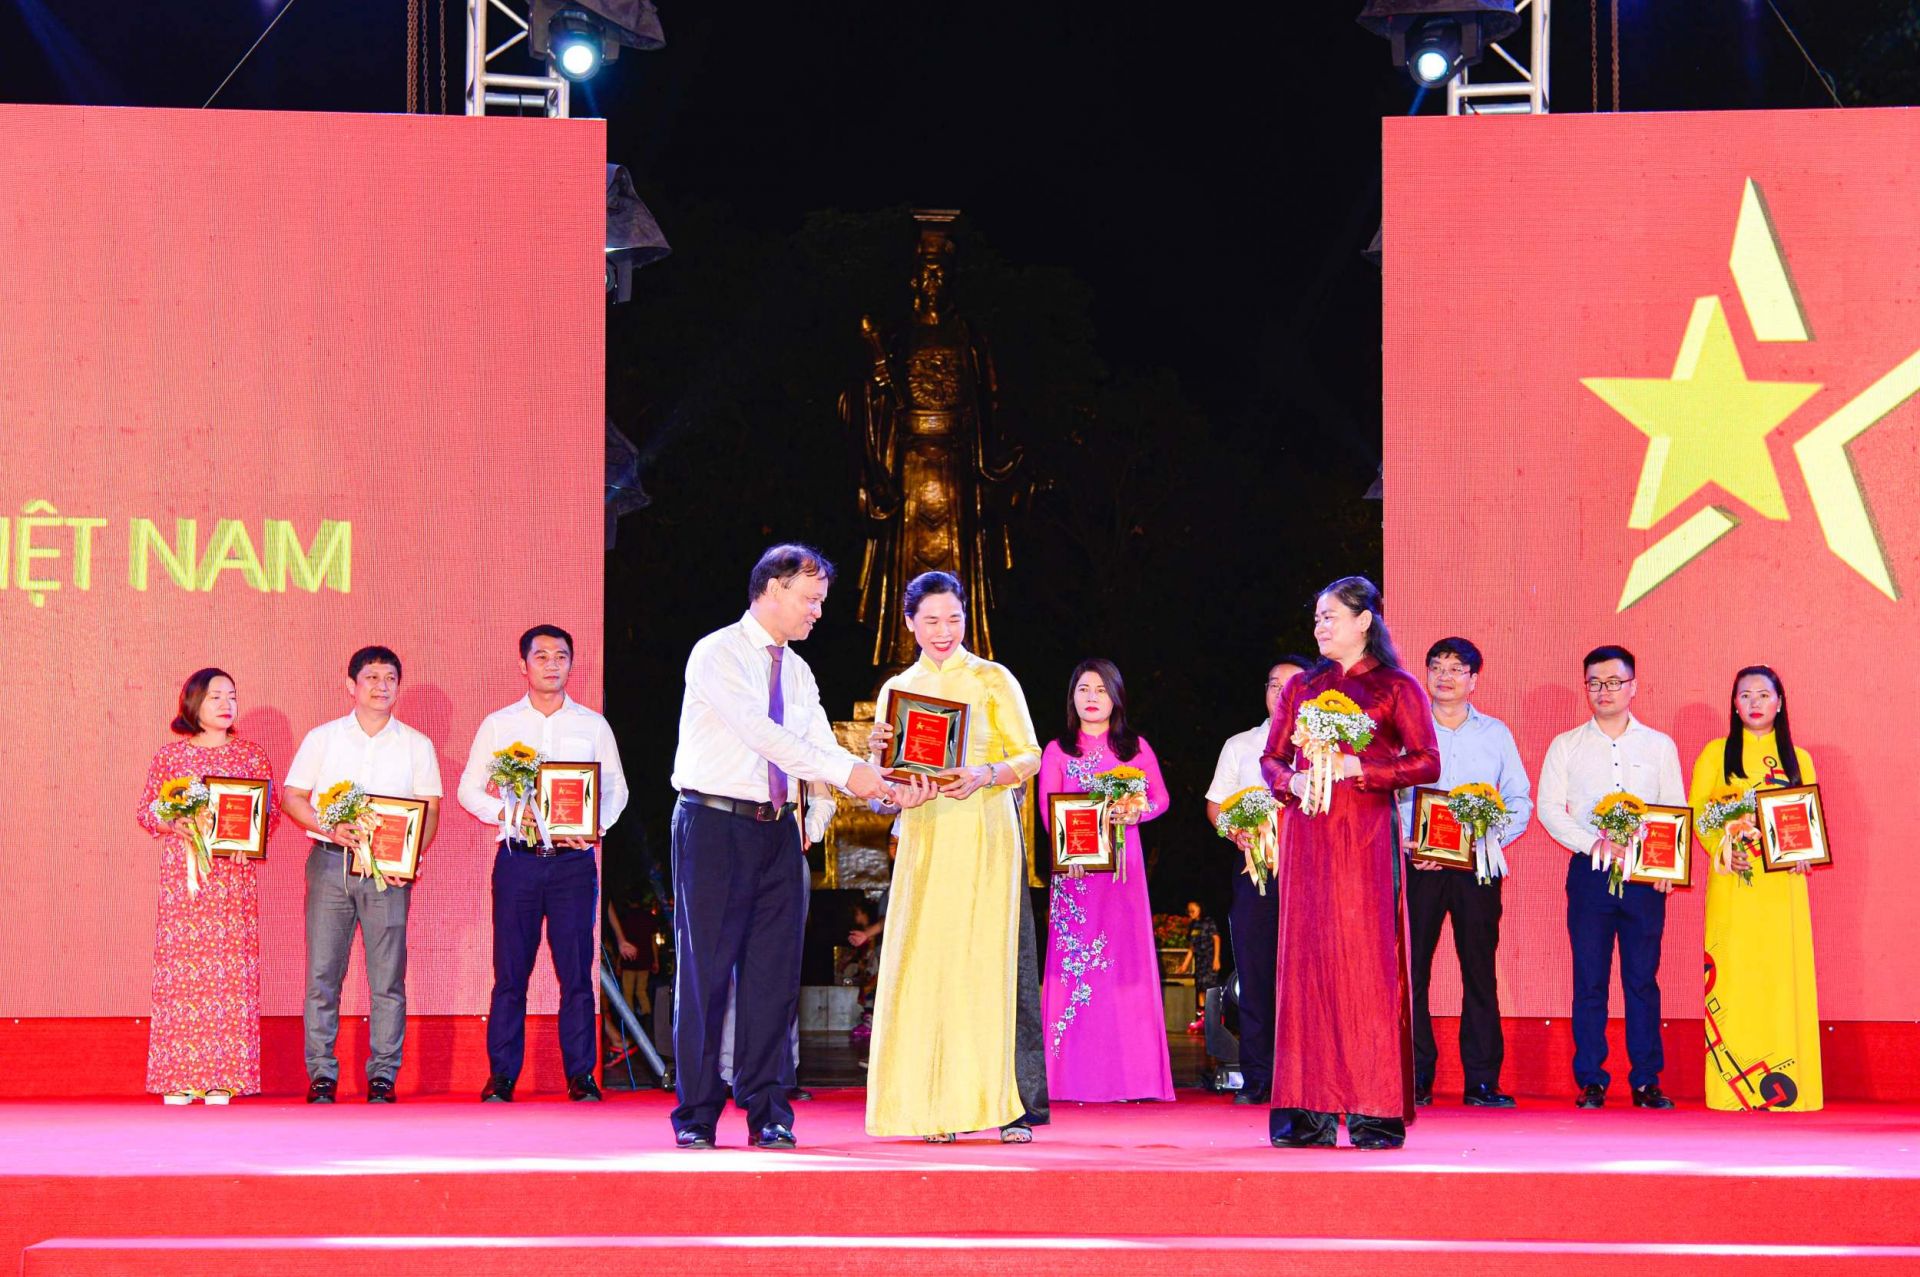 Thứ trưởng Bộ Công Thương Đỗ Thắng Hải (trái) và Phó Chủ tịch Hội Liên hiệp Phụ nữ Việt Nam Đỗ Thị Thu Thảo (phải) trao kỷ niệm chương cho đại diện Trường Cao đẳng Kinh tế Công nghiệp Hà Nội